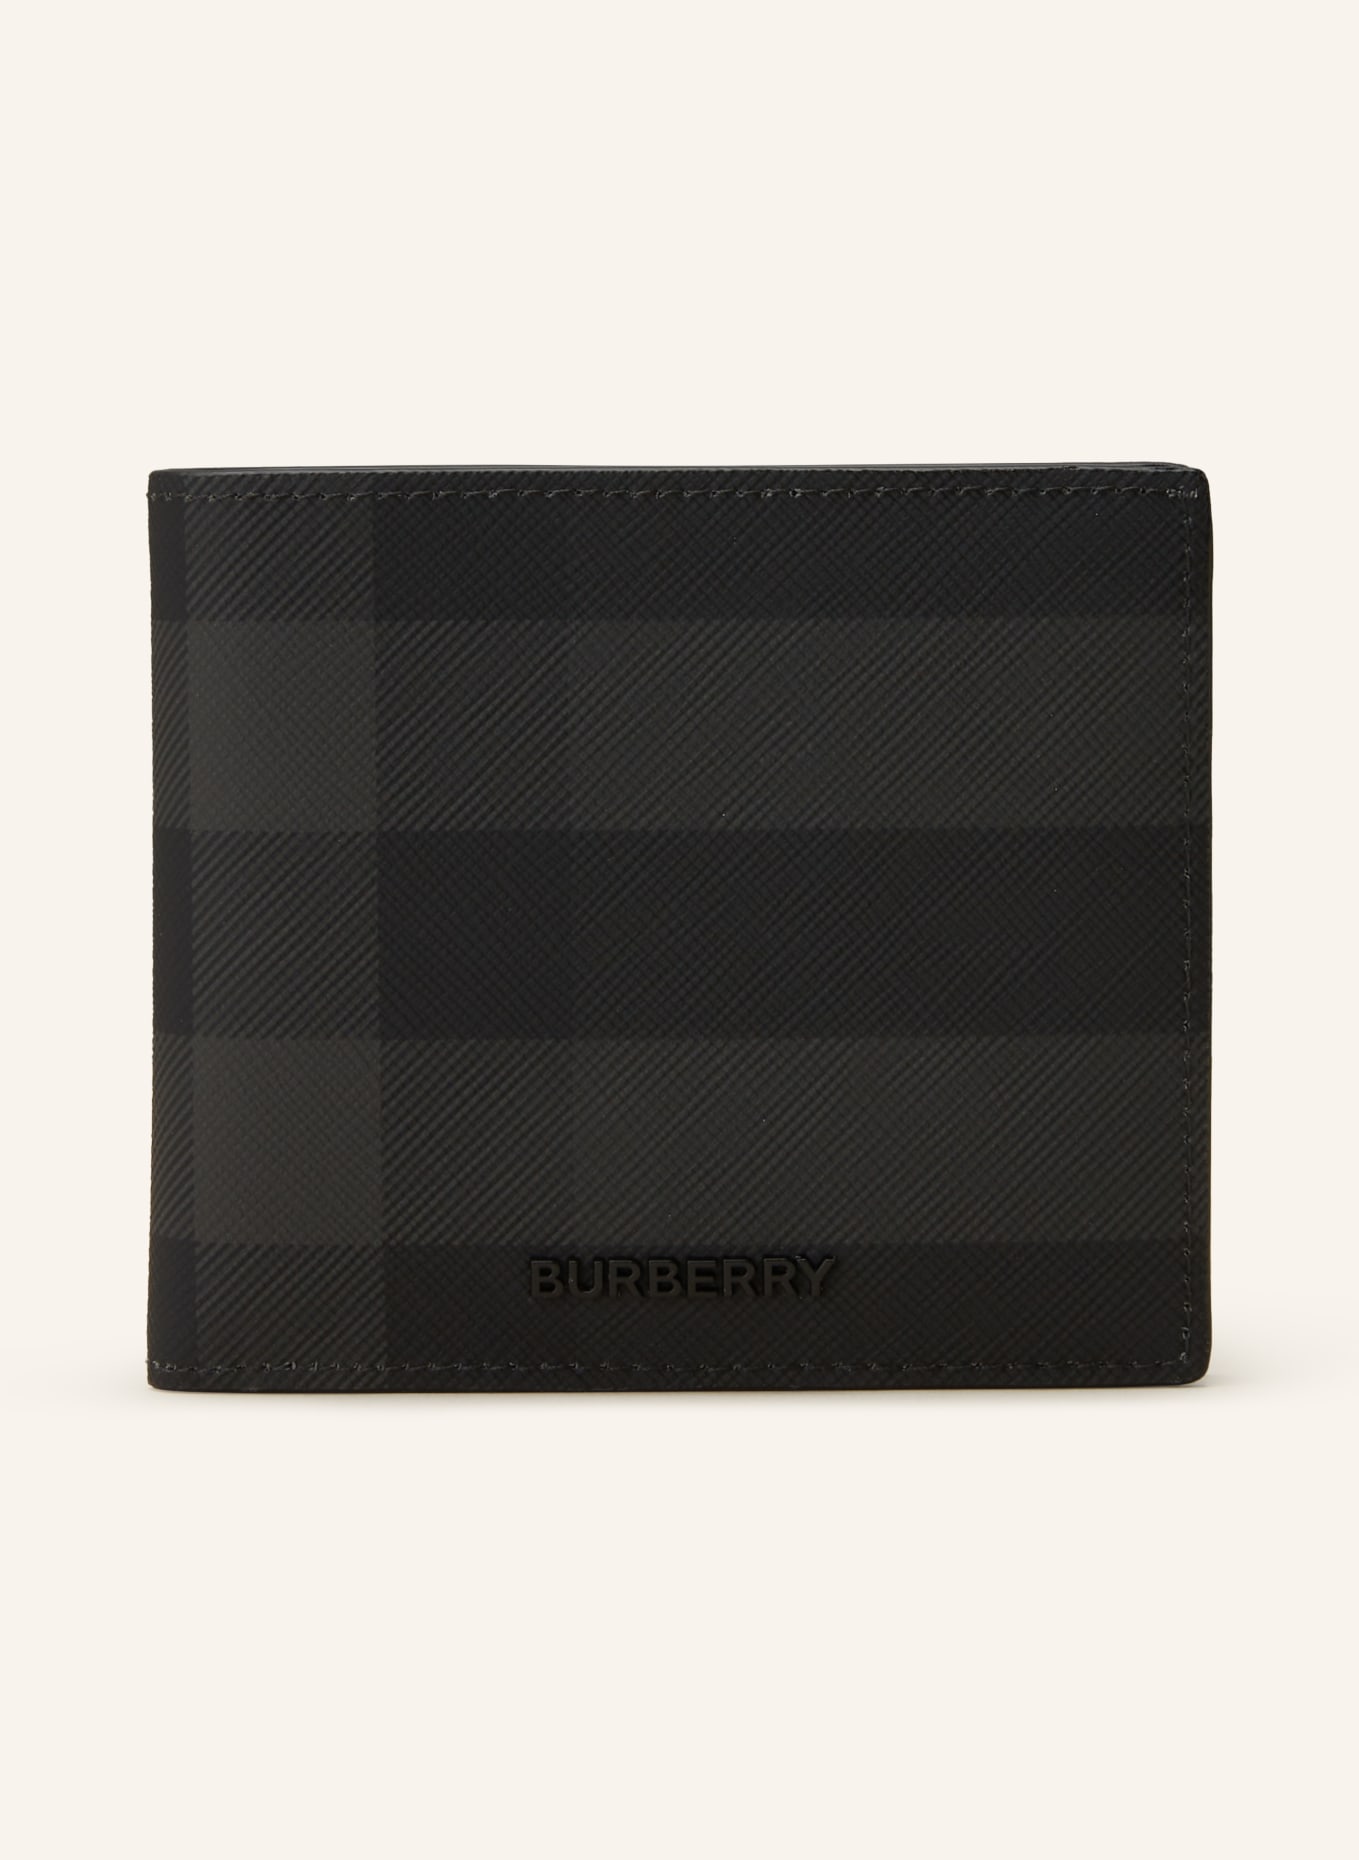 BURBERRY Wallet, Color: BLACK/ DARK GRAY (Image 1)